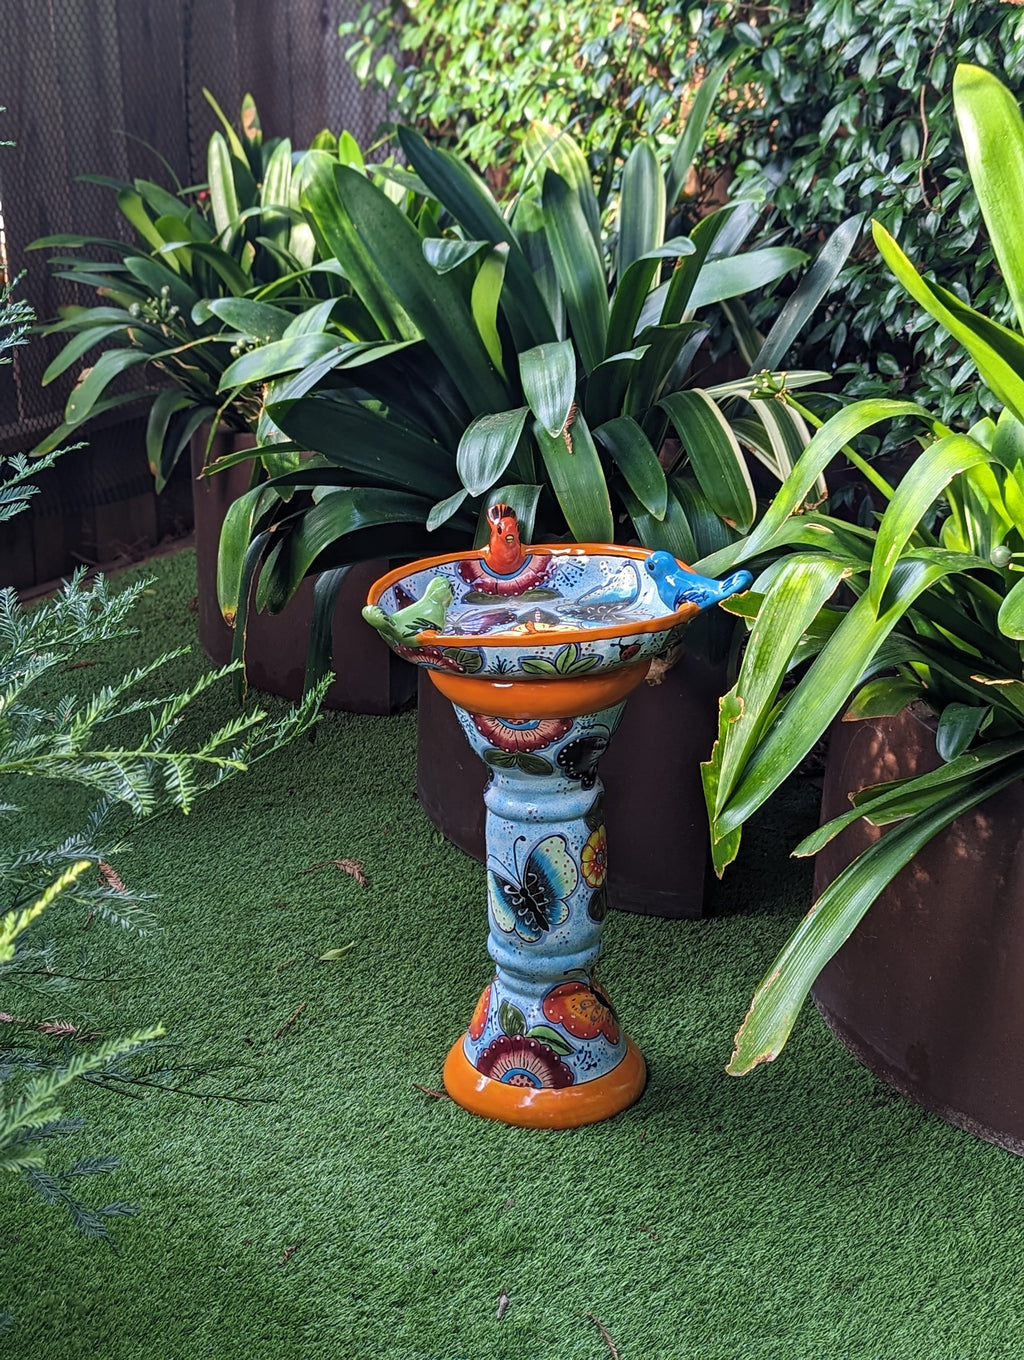 Pre-Order | Bird Bath Garden Decor in Talavera Pottery Ships 9-1 | Handmade Mexican Pedestal & Basin for Birds Doubles as Stunning Yard Art